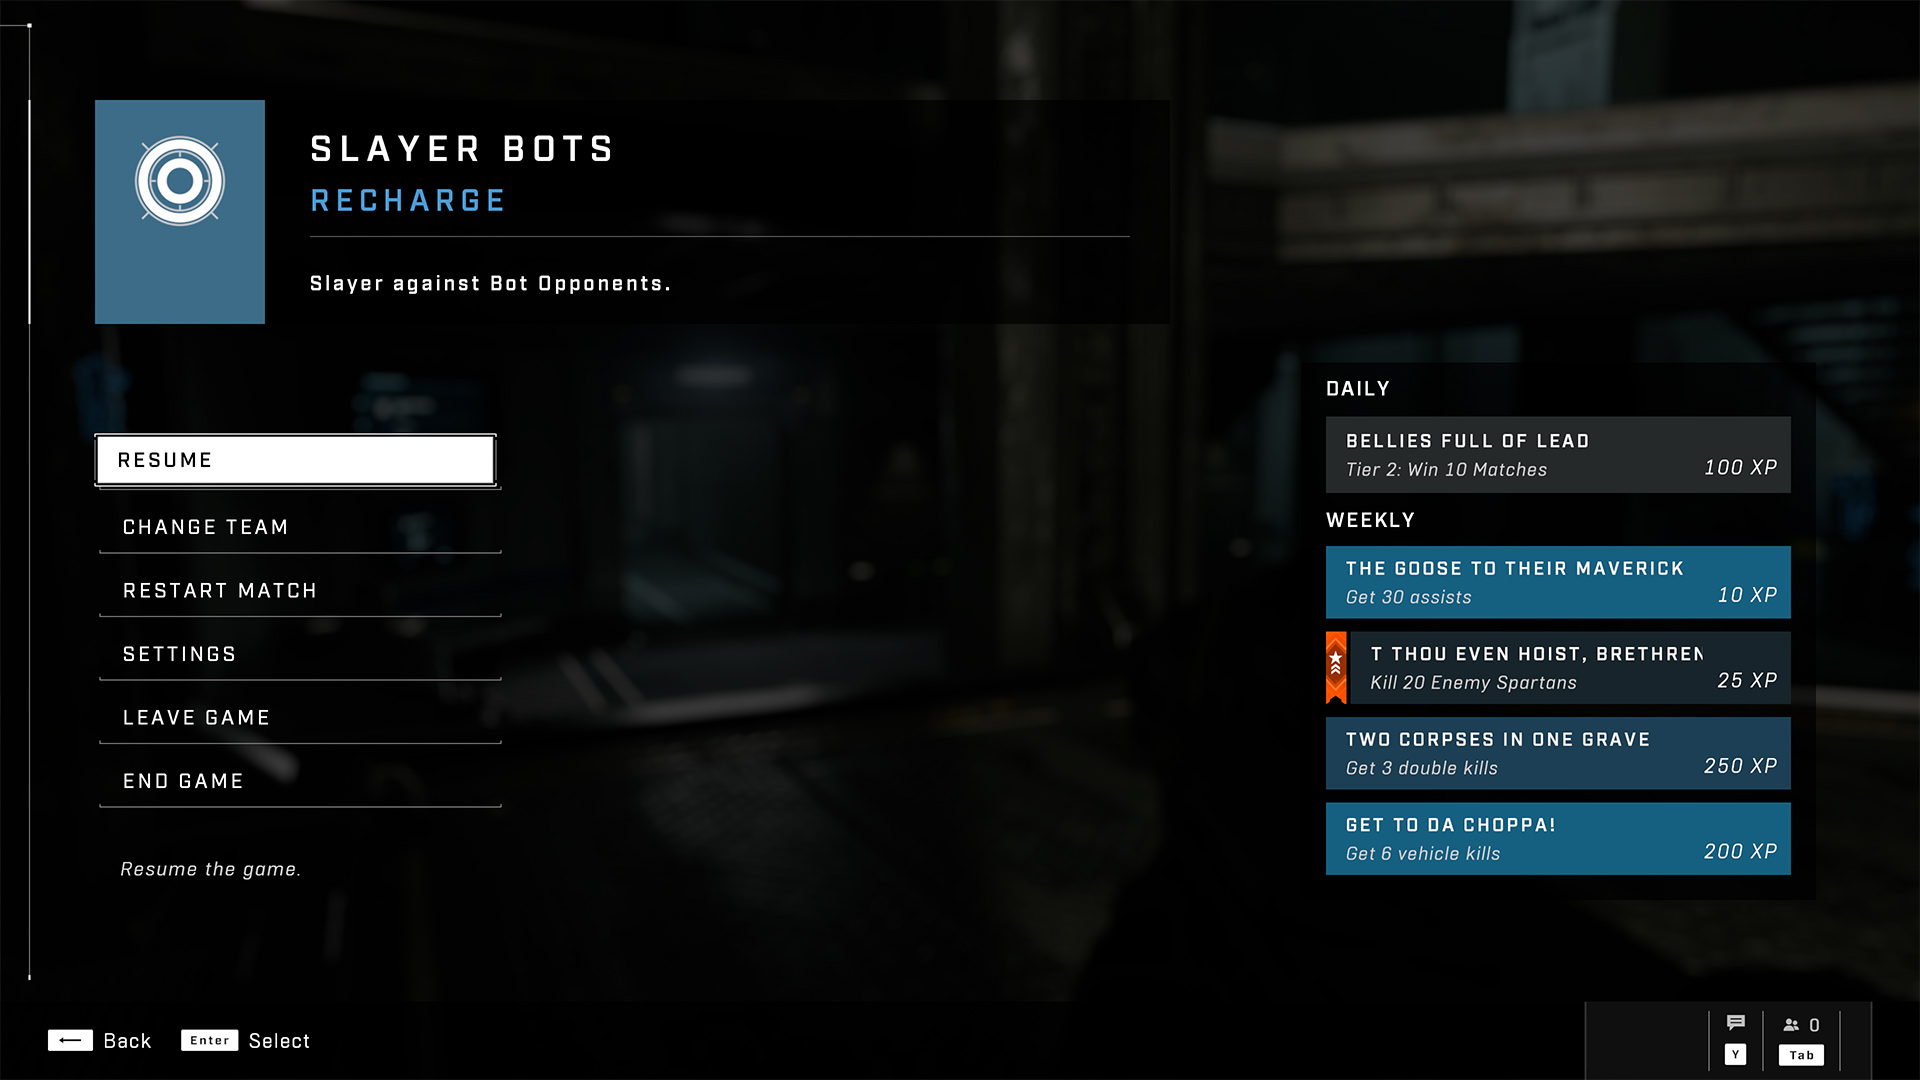 Zrzut ekranu menu pauzy, które pokazuje wyzwania po prawej stronie.